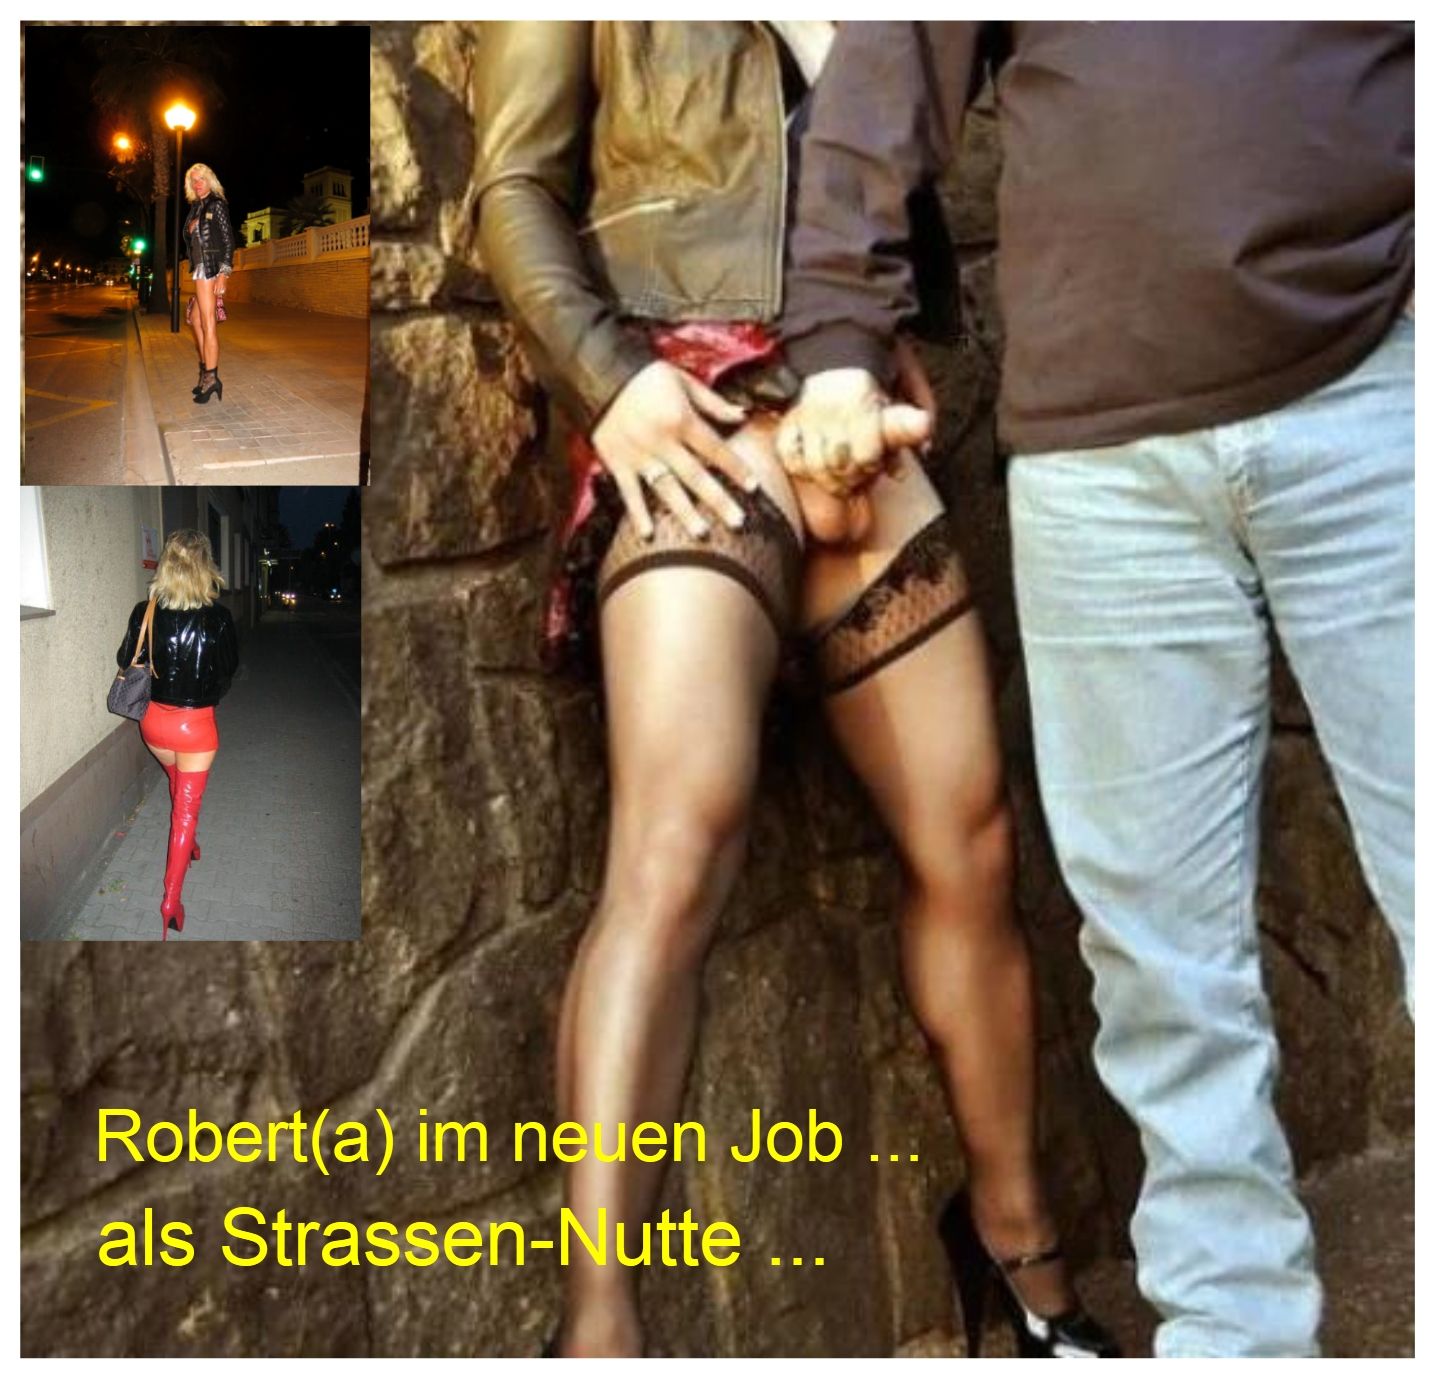 Robert now as street-hooker Roberta